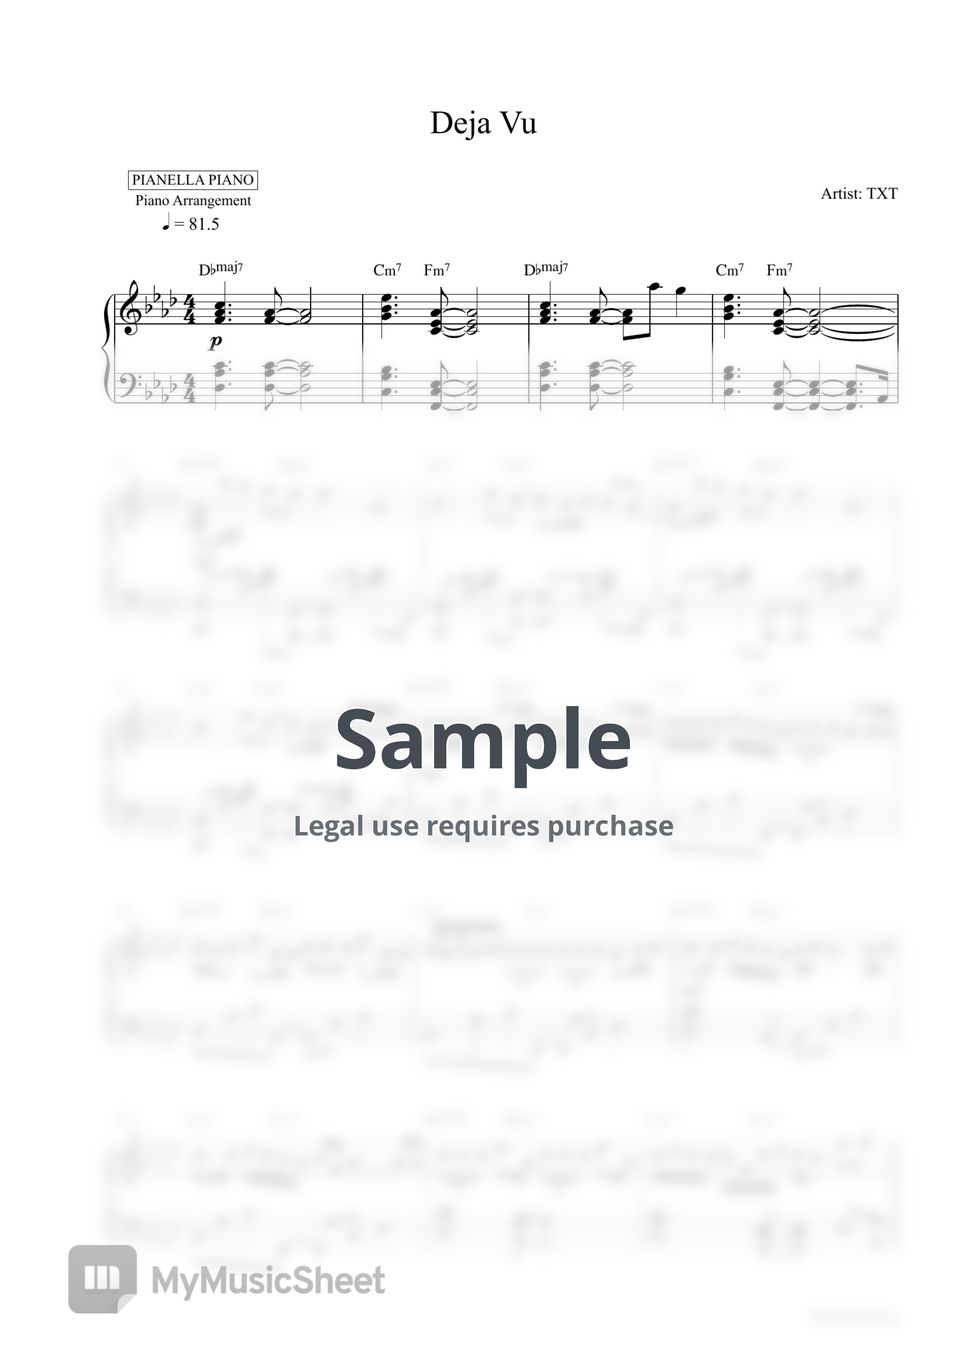 TXT - Deja Vu (Piano Sheet) by Pianella Piano